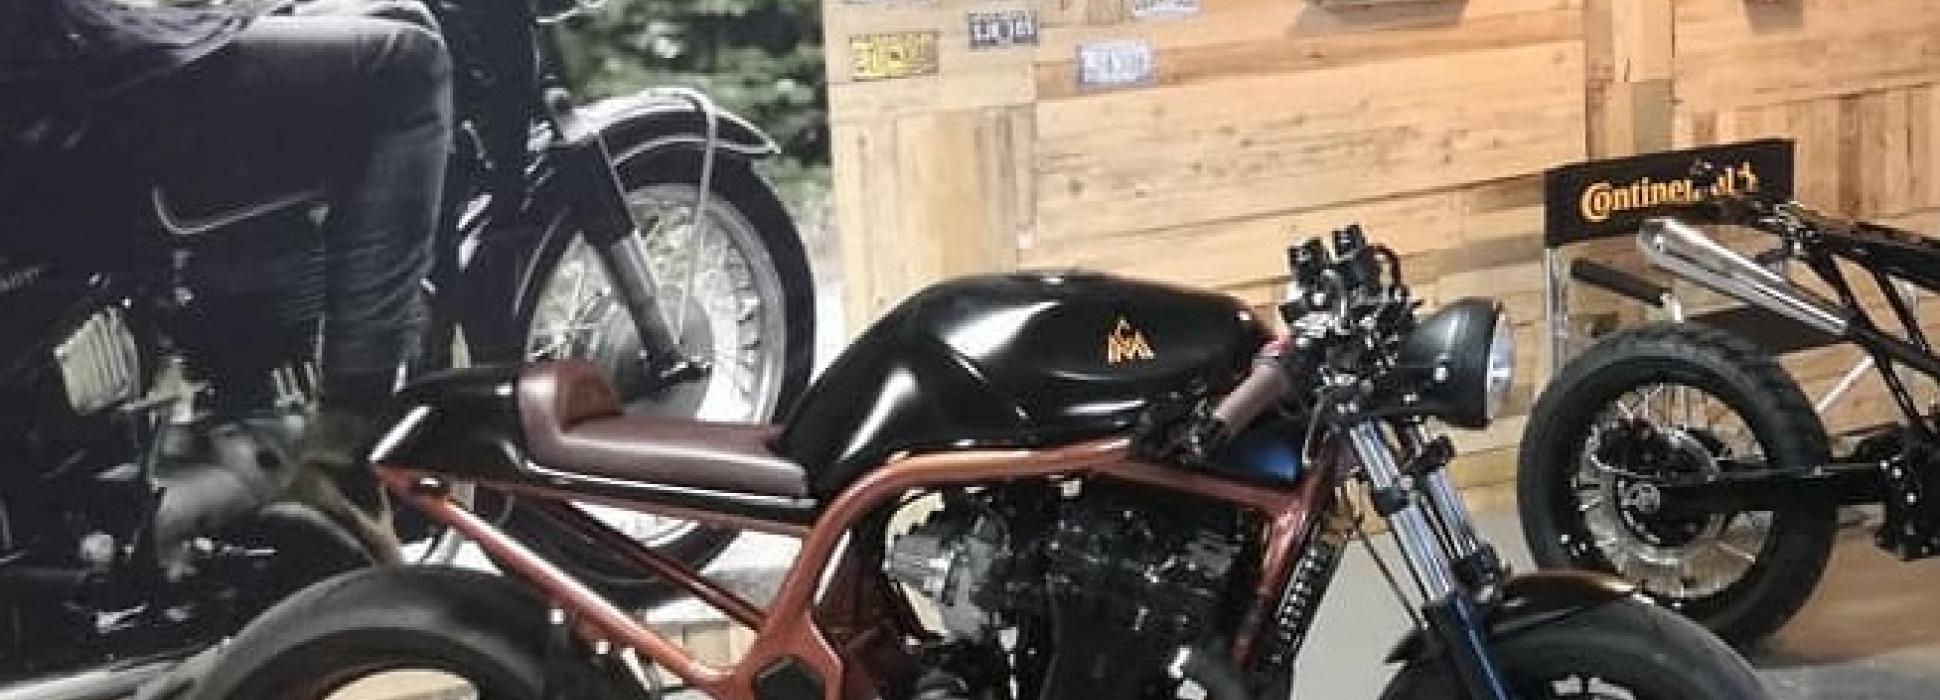 "Le Coin du motard" en Saint-Sauveur-la-Pommeraye crea la moto de tus sueños